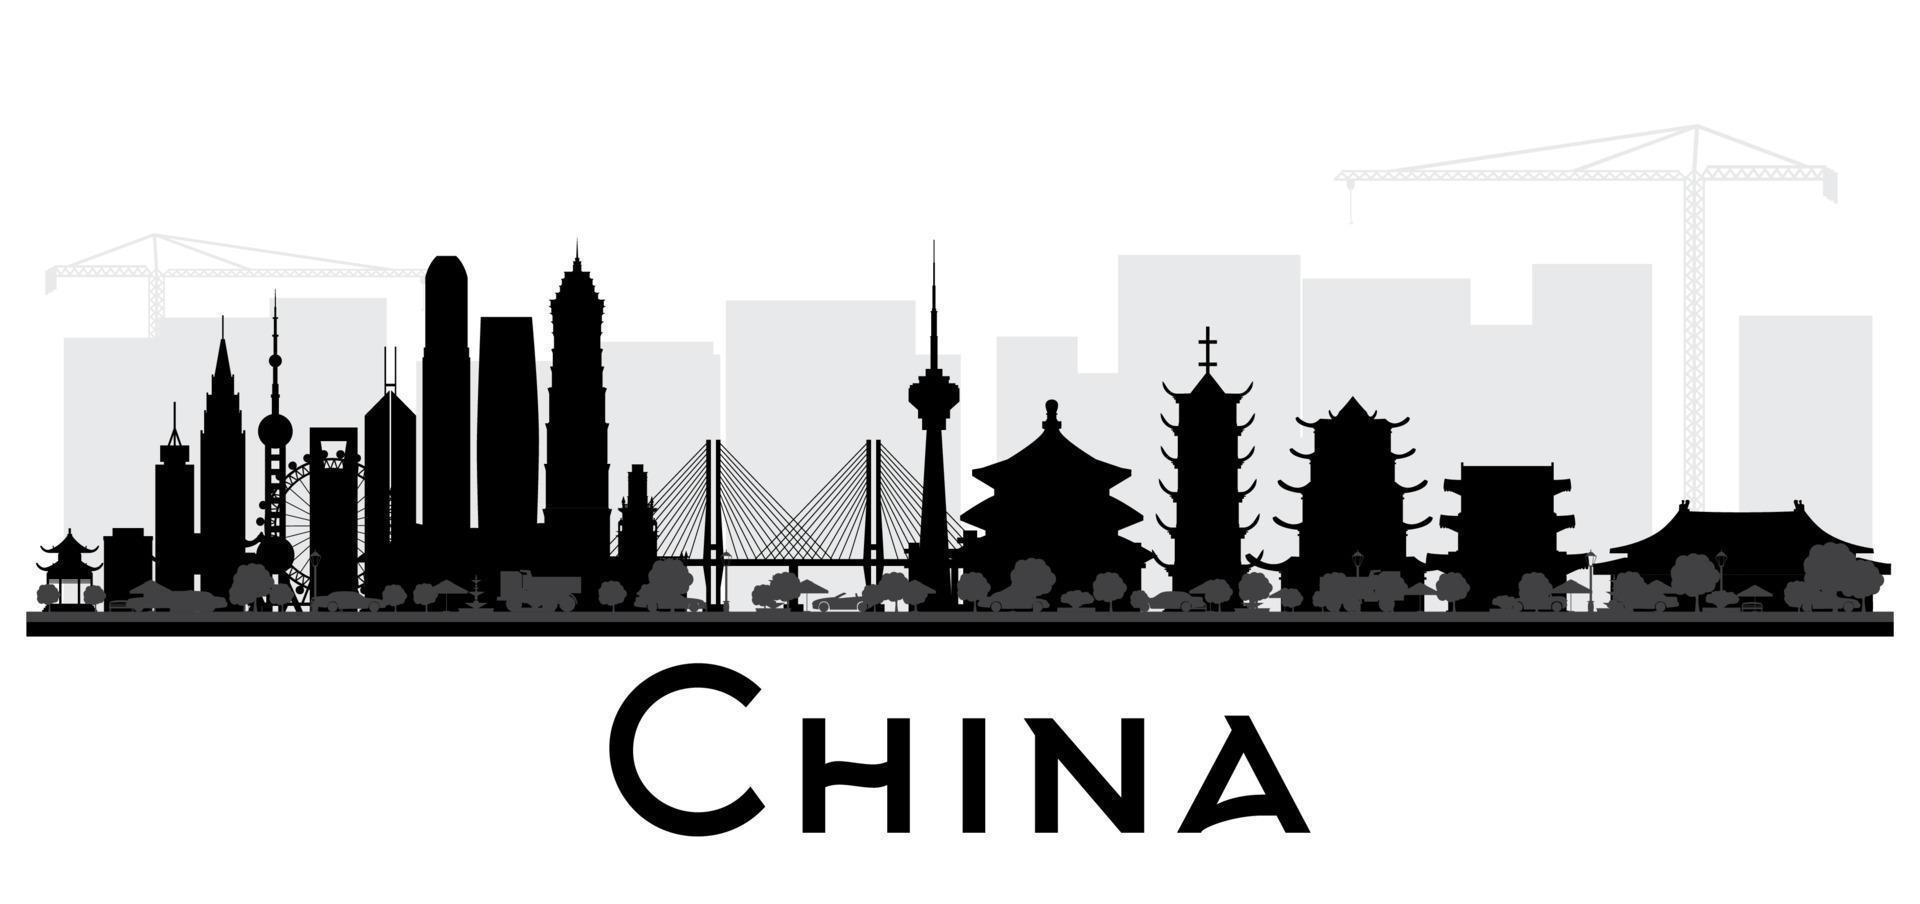 silueta en blanco y negro del horizonte de la ciudad de china. vector